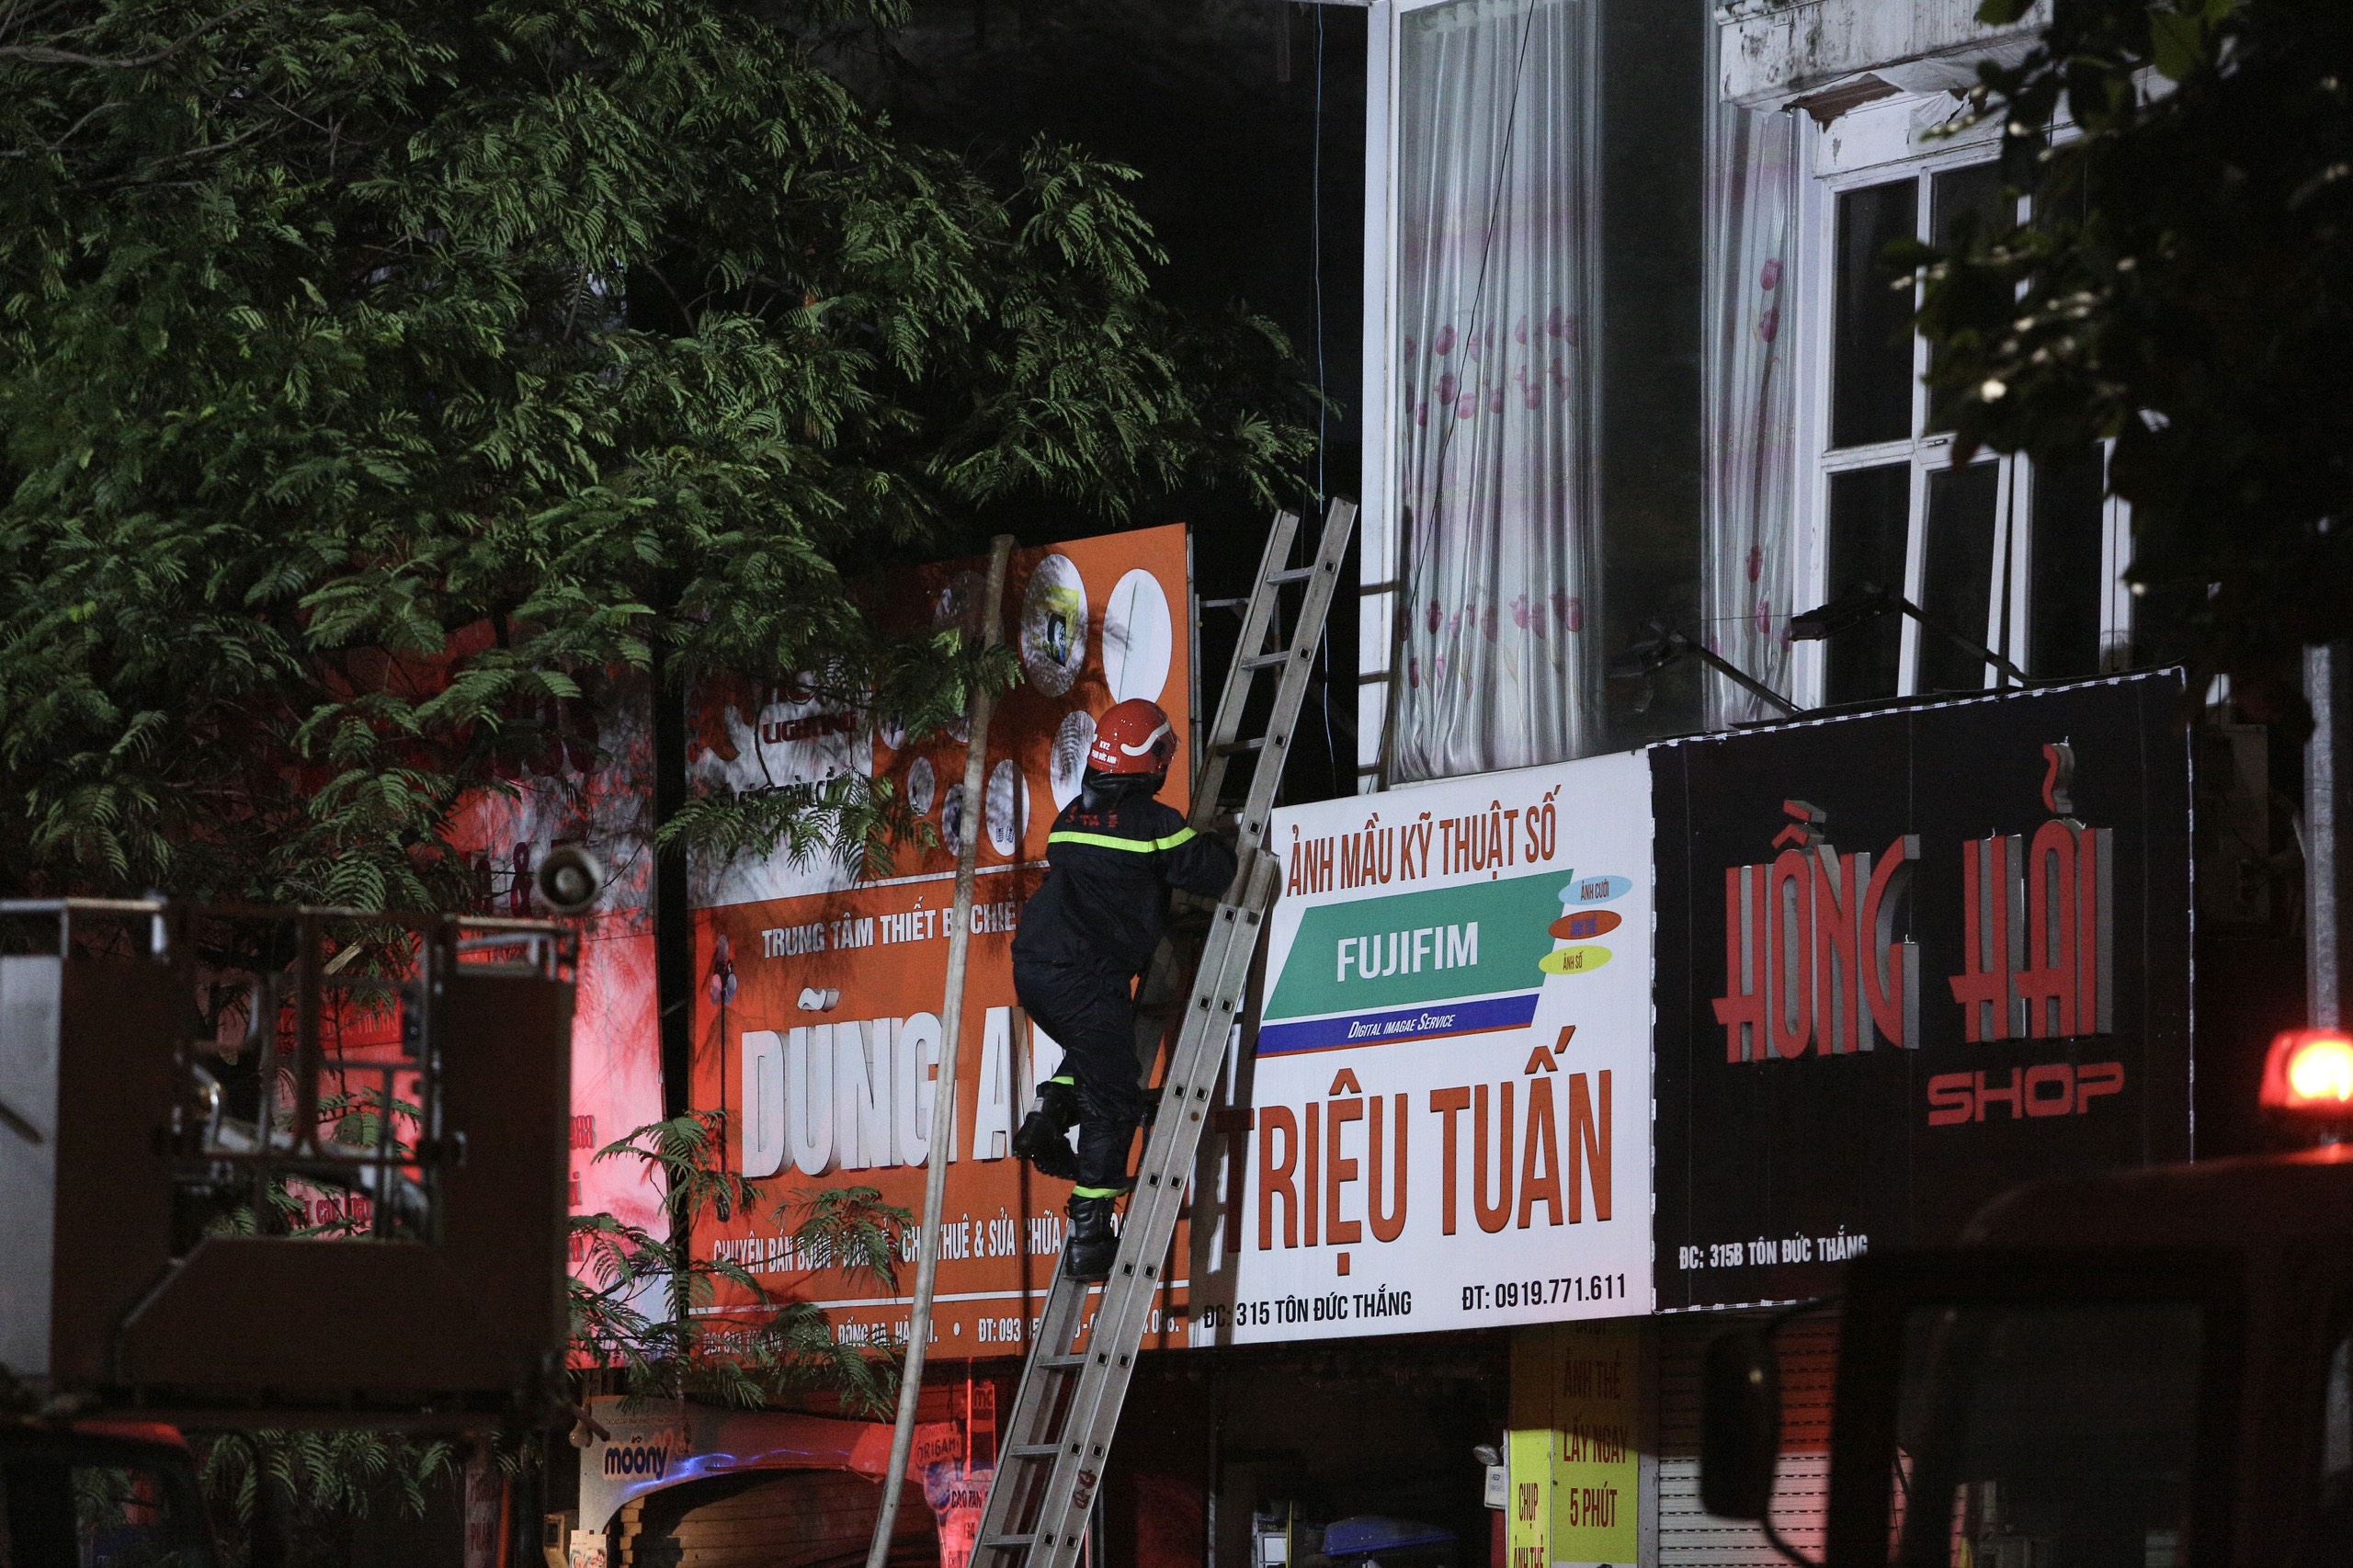 Từ vụ cháy nhà khiến 4 người tử vong ở Hà Nội: Lối thoát hiểm an toàn vẫn bị xem nhẹ, chạy lên tum giống như đi vào đường cùng - Ảnh 5.